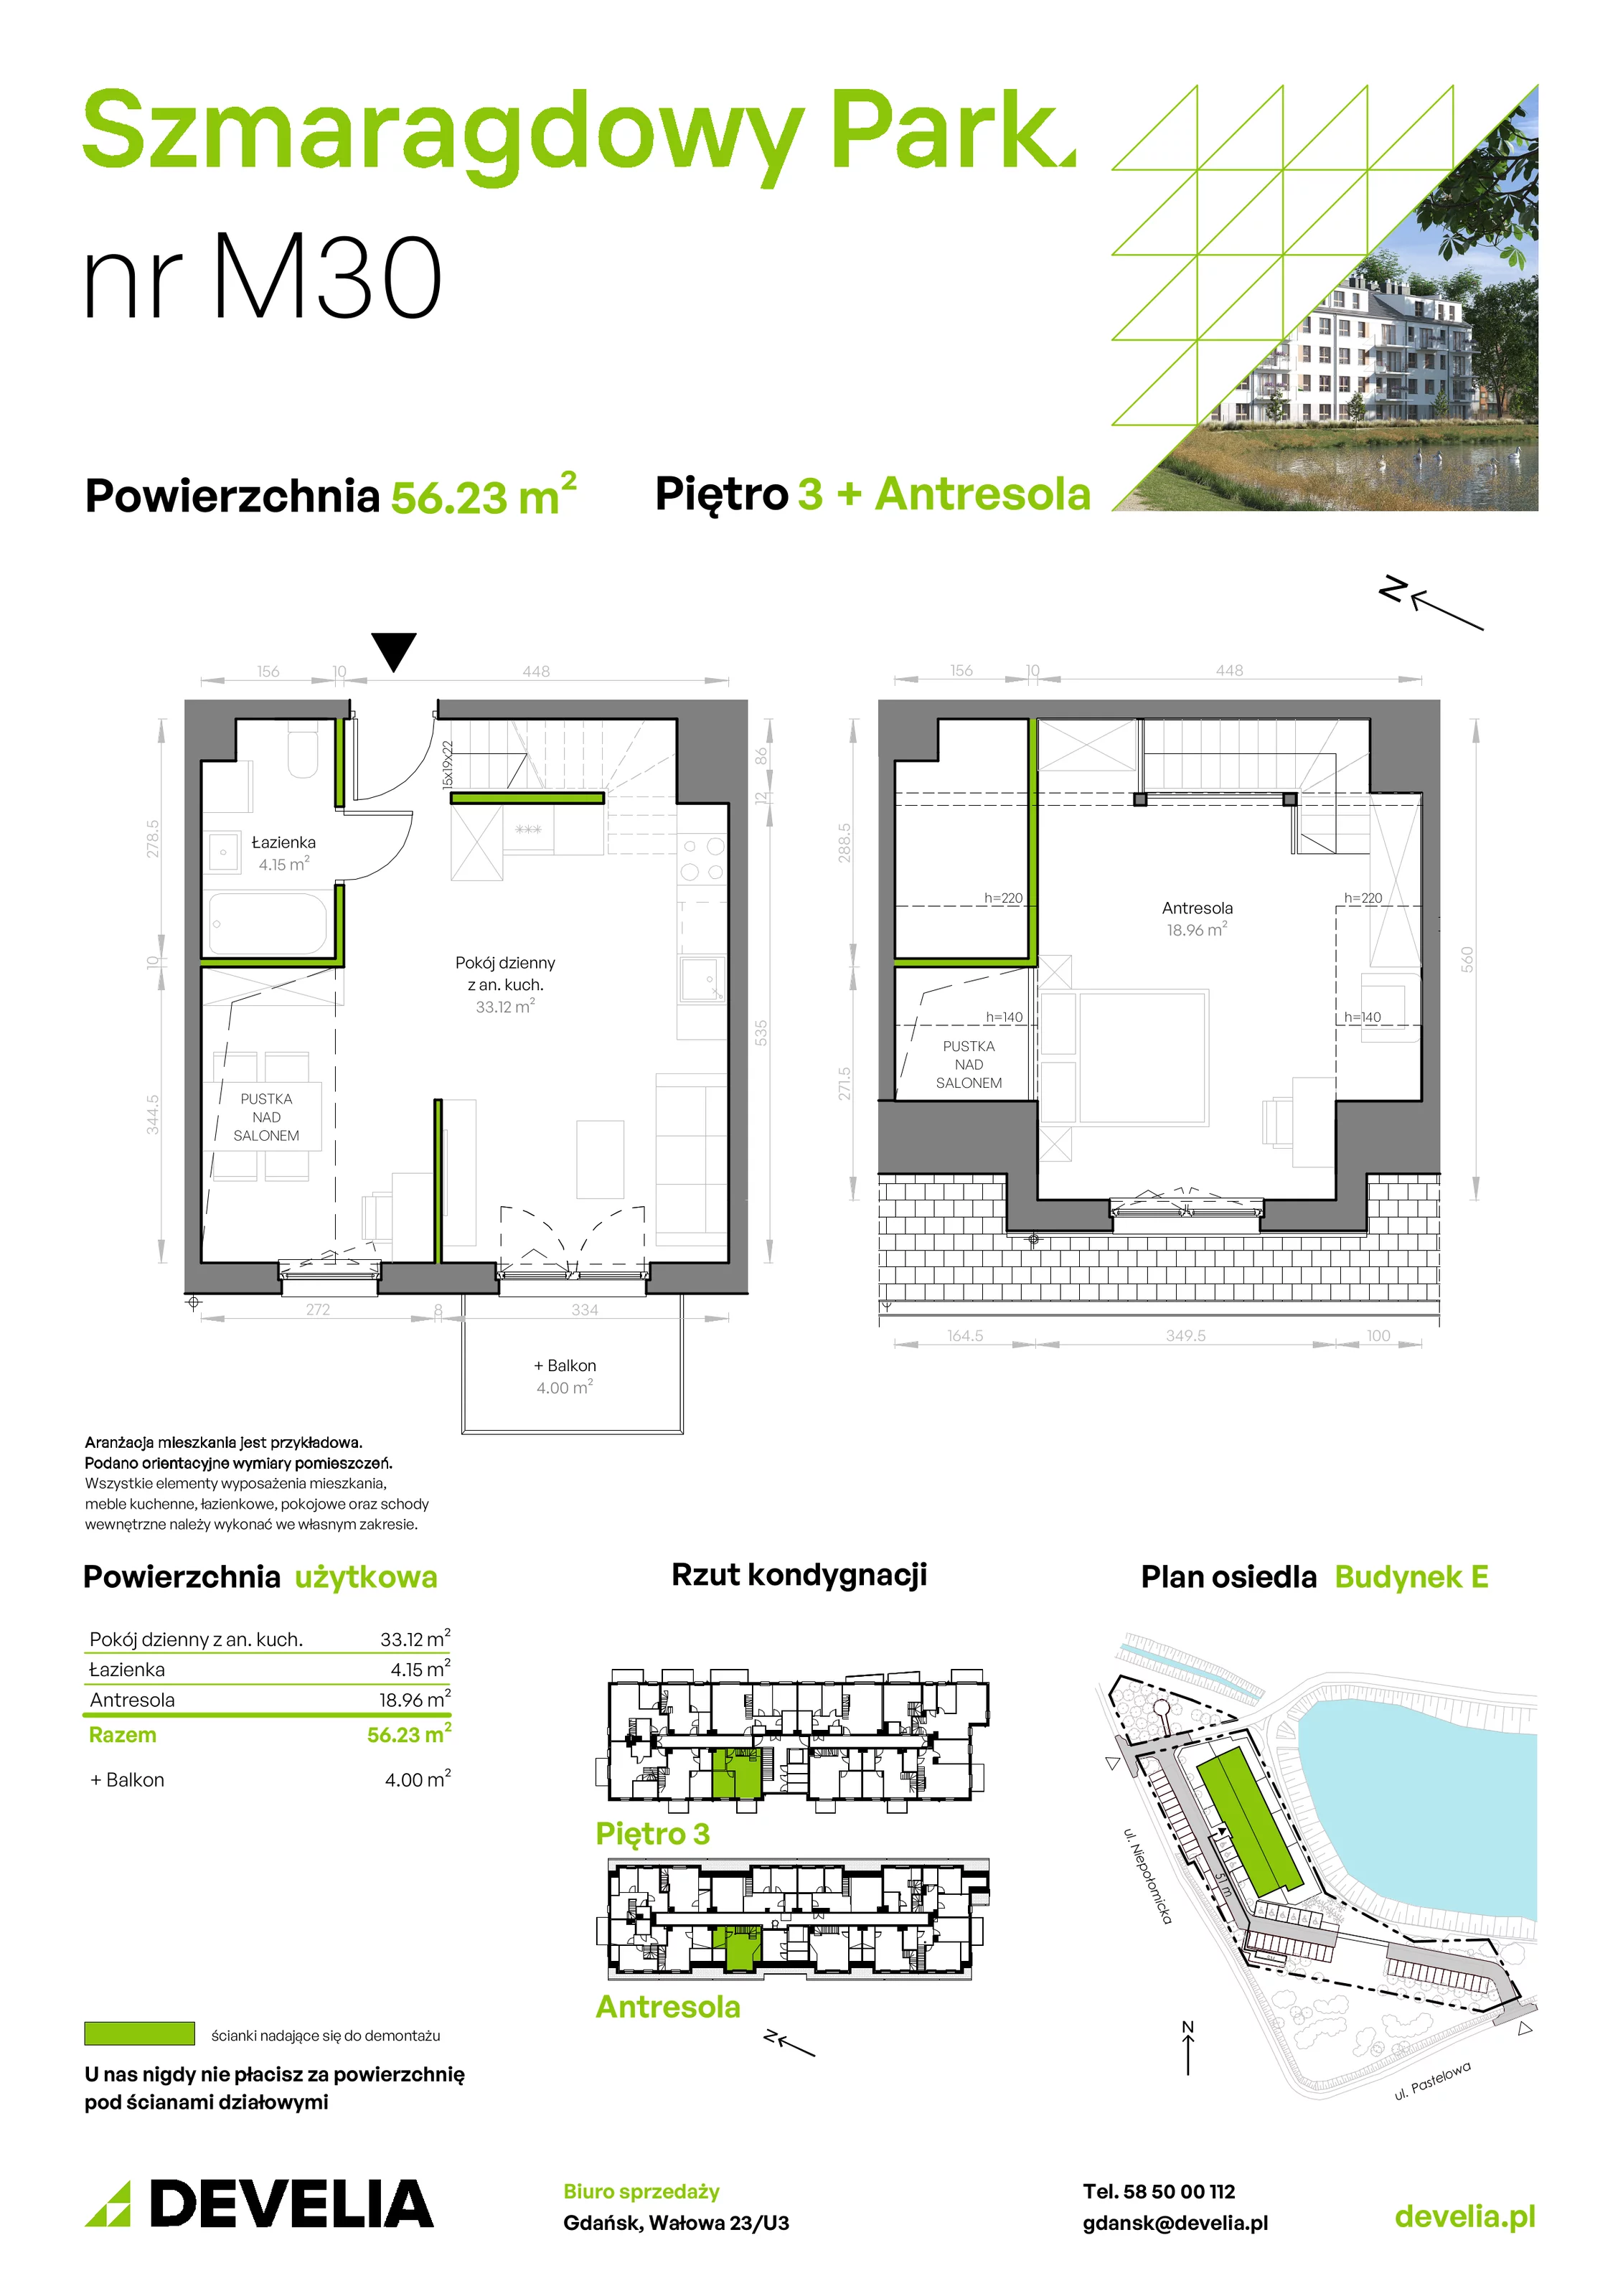 Mieszkanie 56,23 m², piętro 3, oferta nr E/030, Szmaragdowy Park, Gdańsk, Orunia Górna-Gdańsk Południe, Łostowice, ul. Topazowa 2